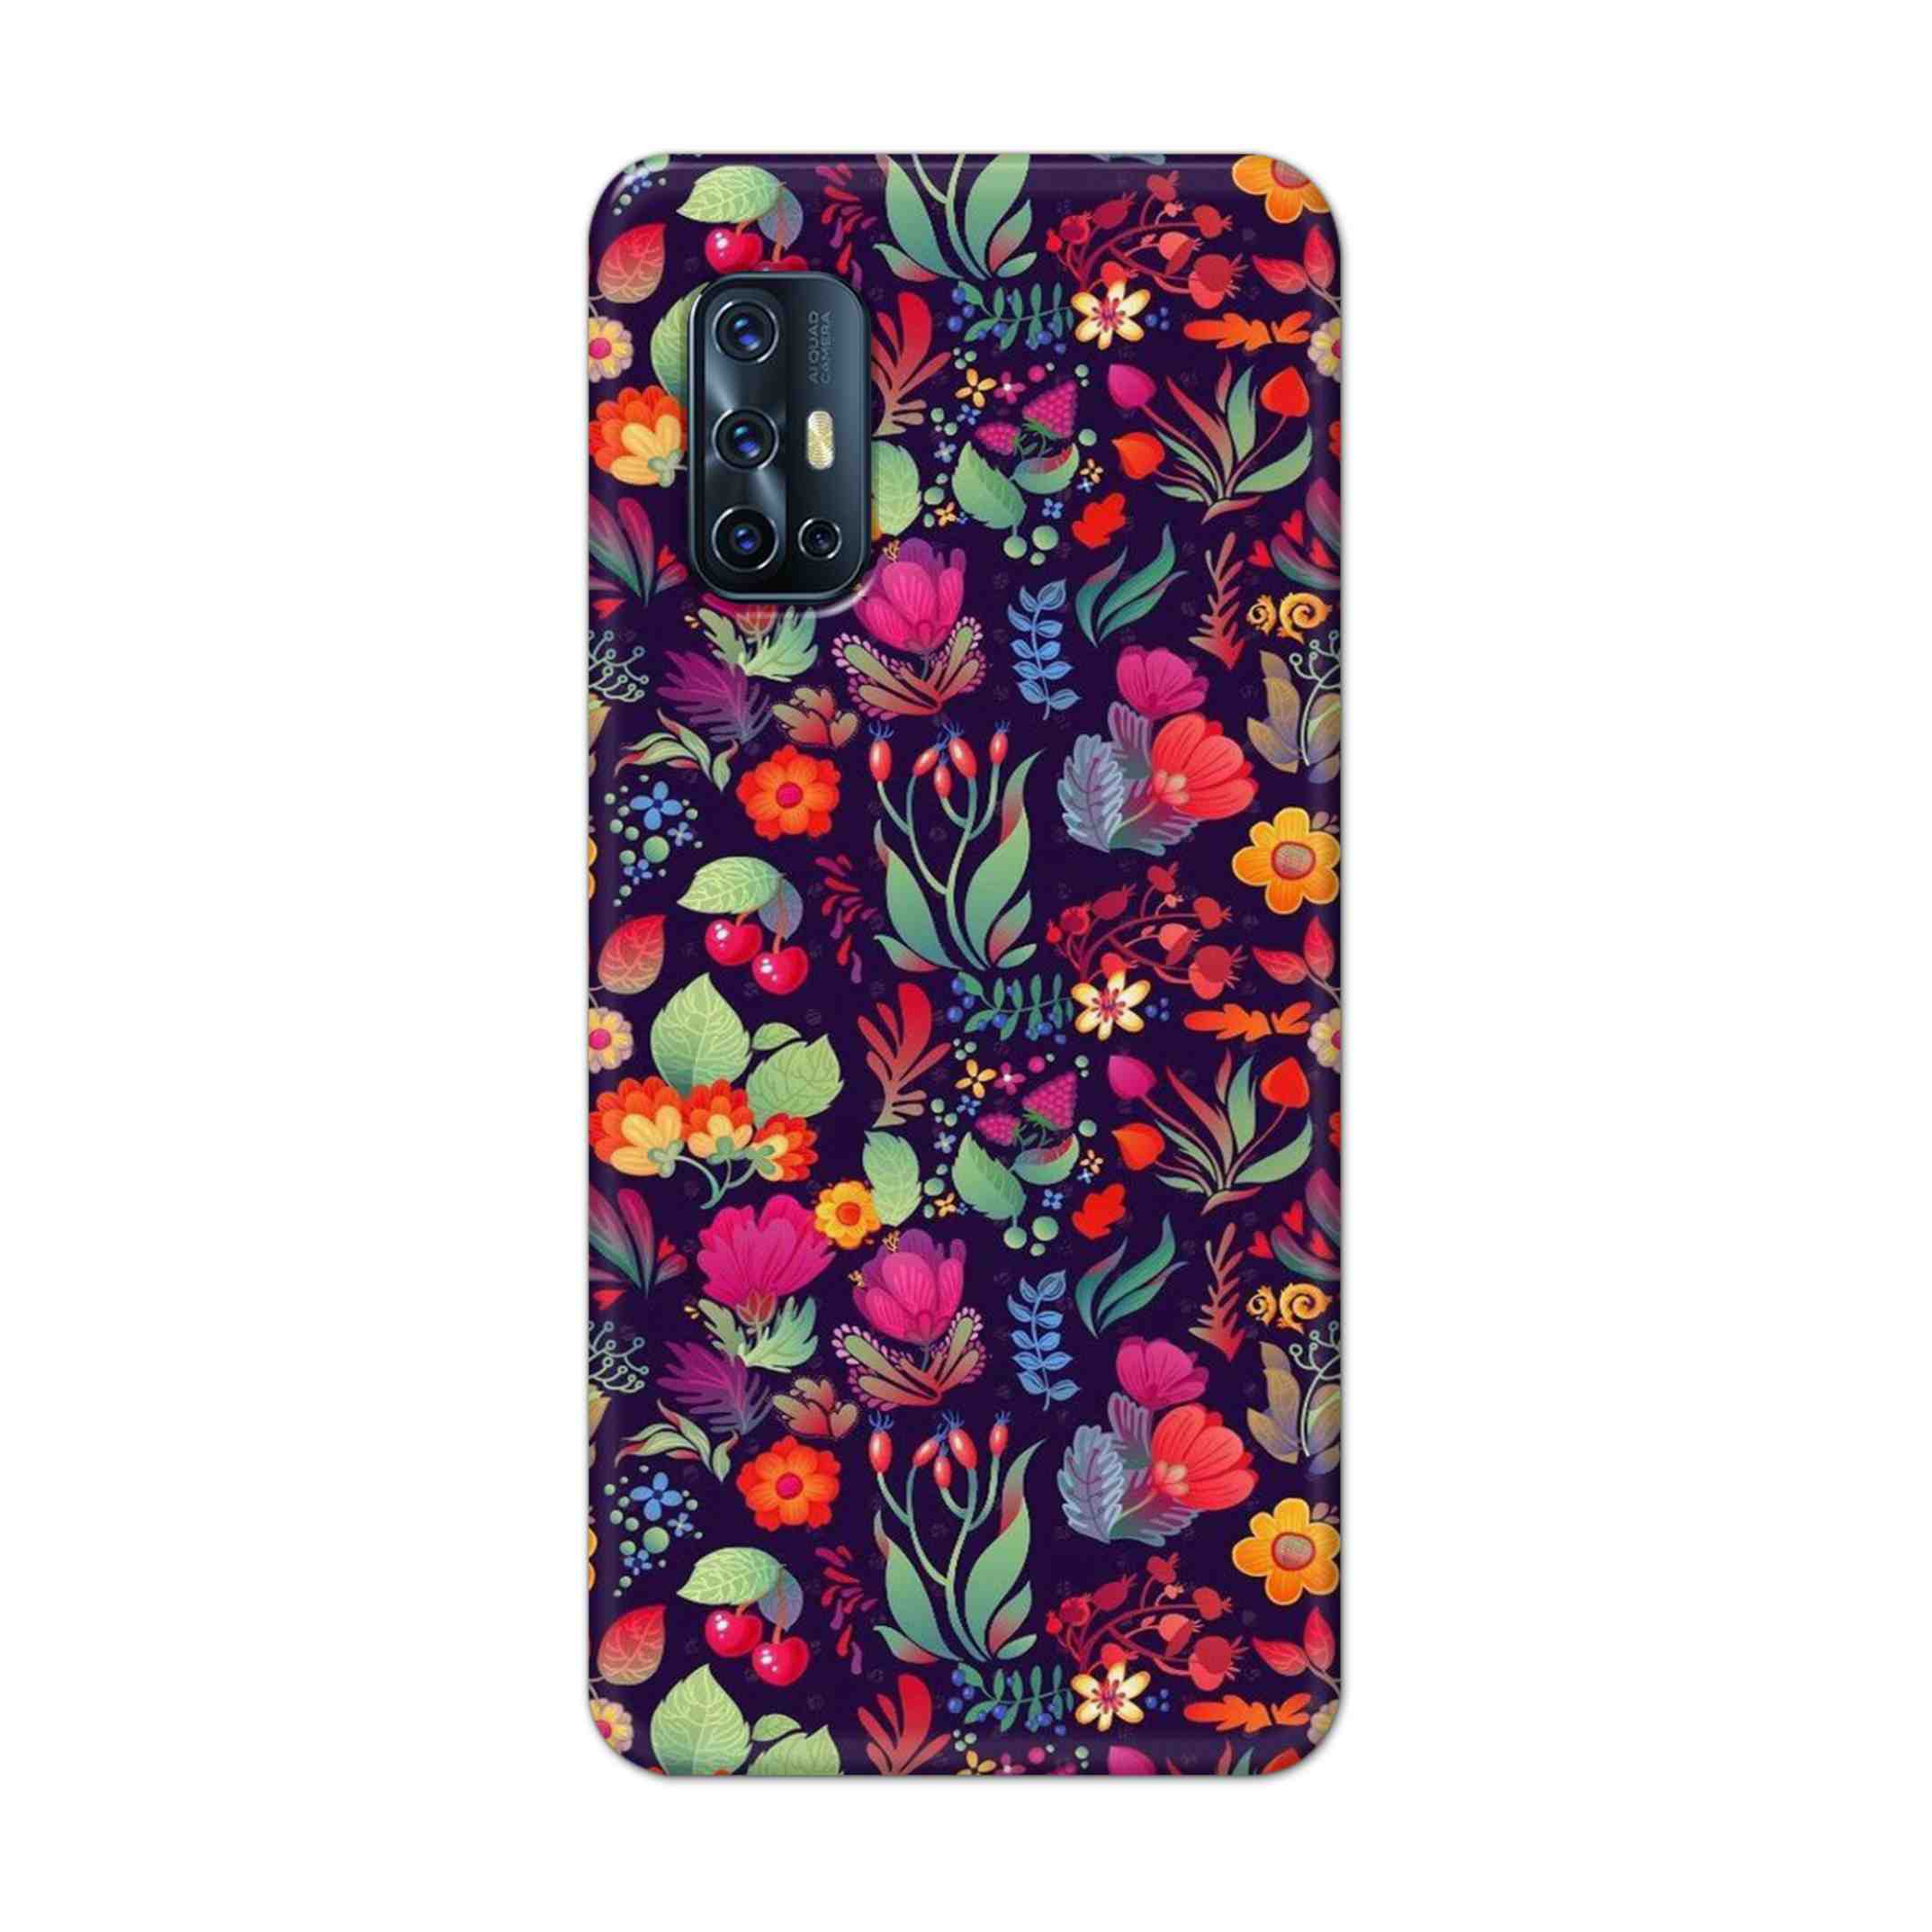 Buy Fruits Flower Hard Back Mobile Phone Case Cover For Vivo V17 Online